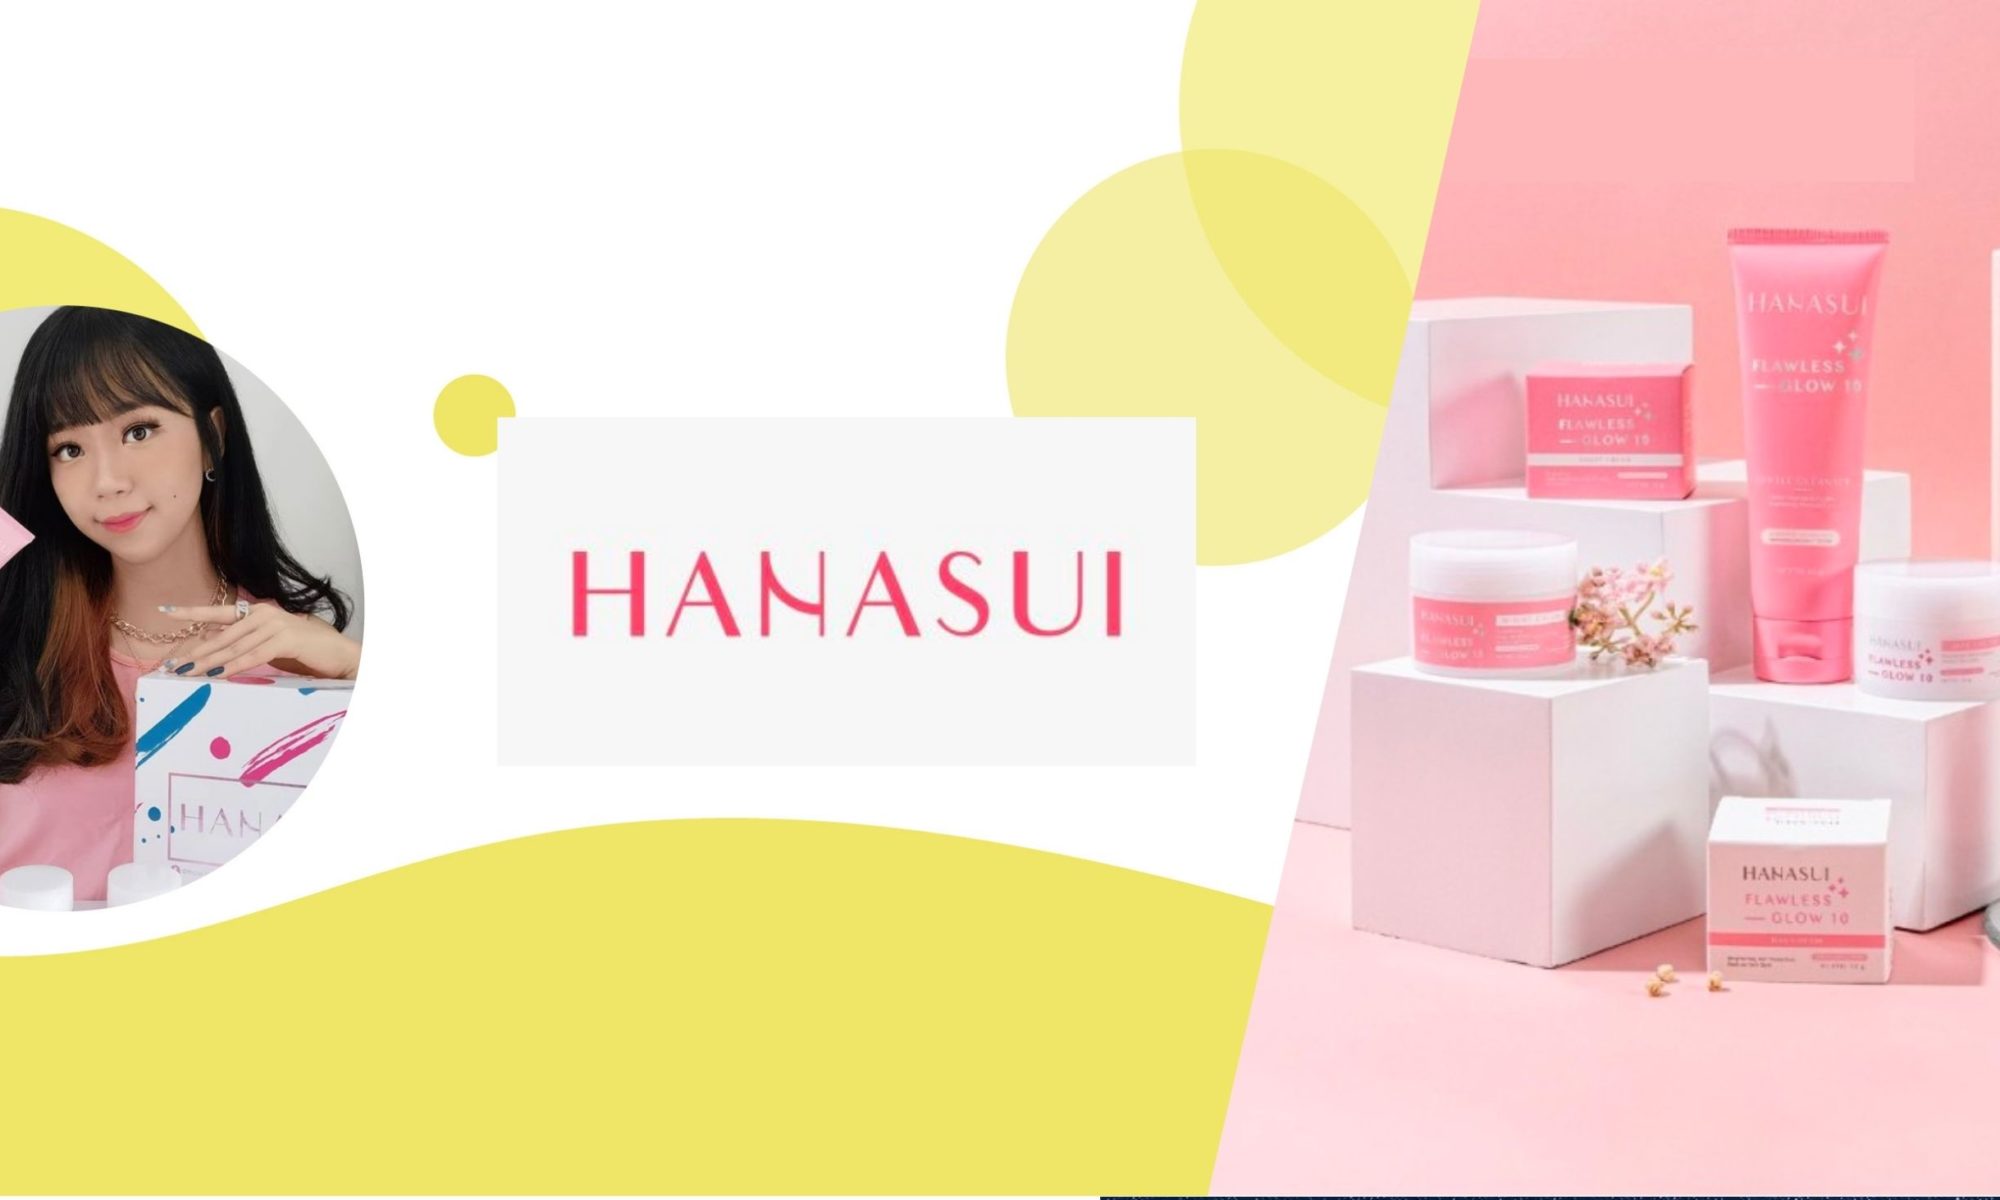 Hanasui influencer marketing